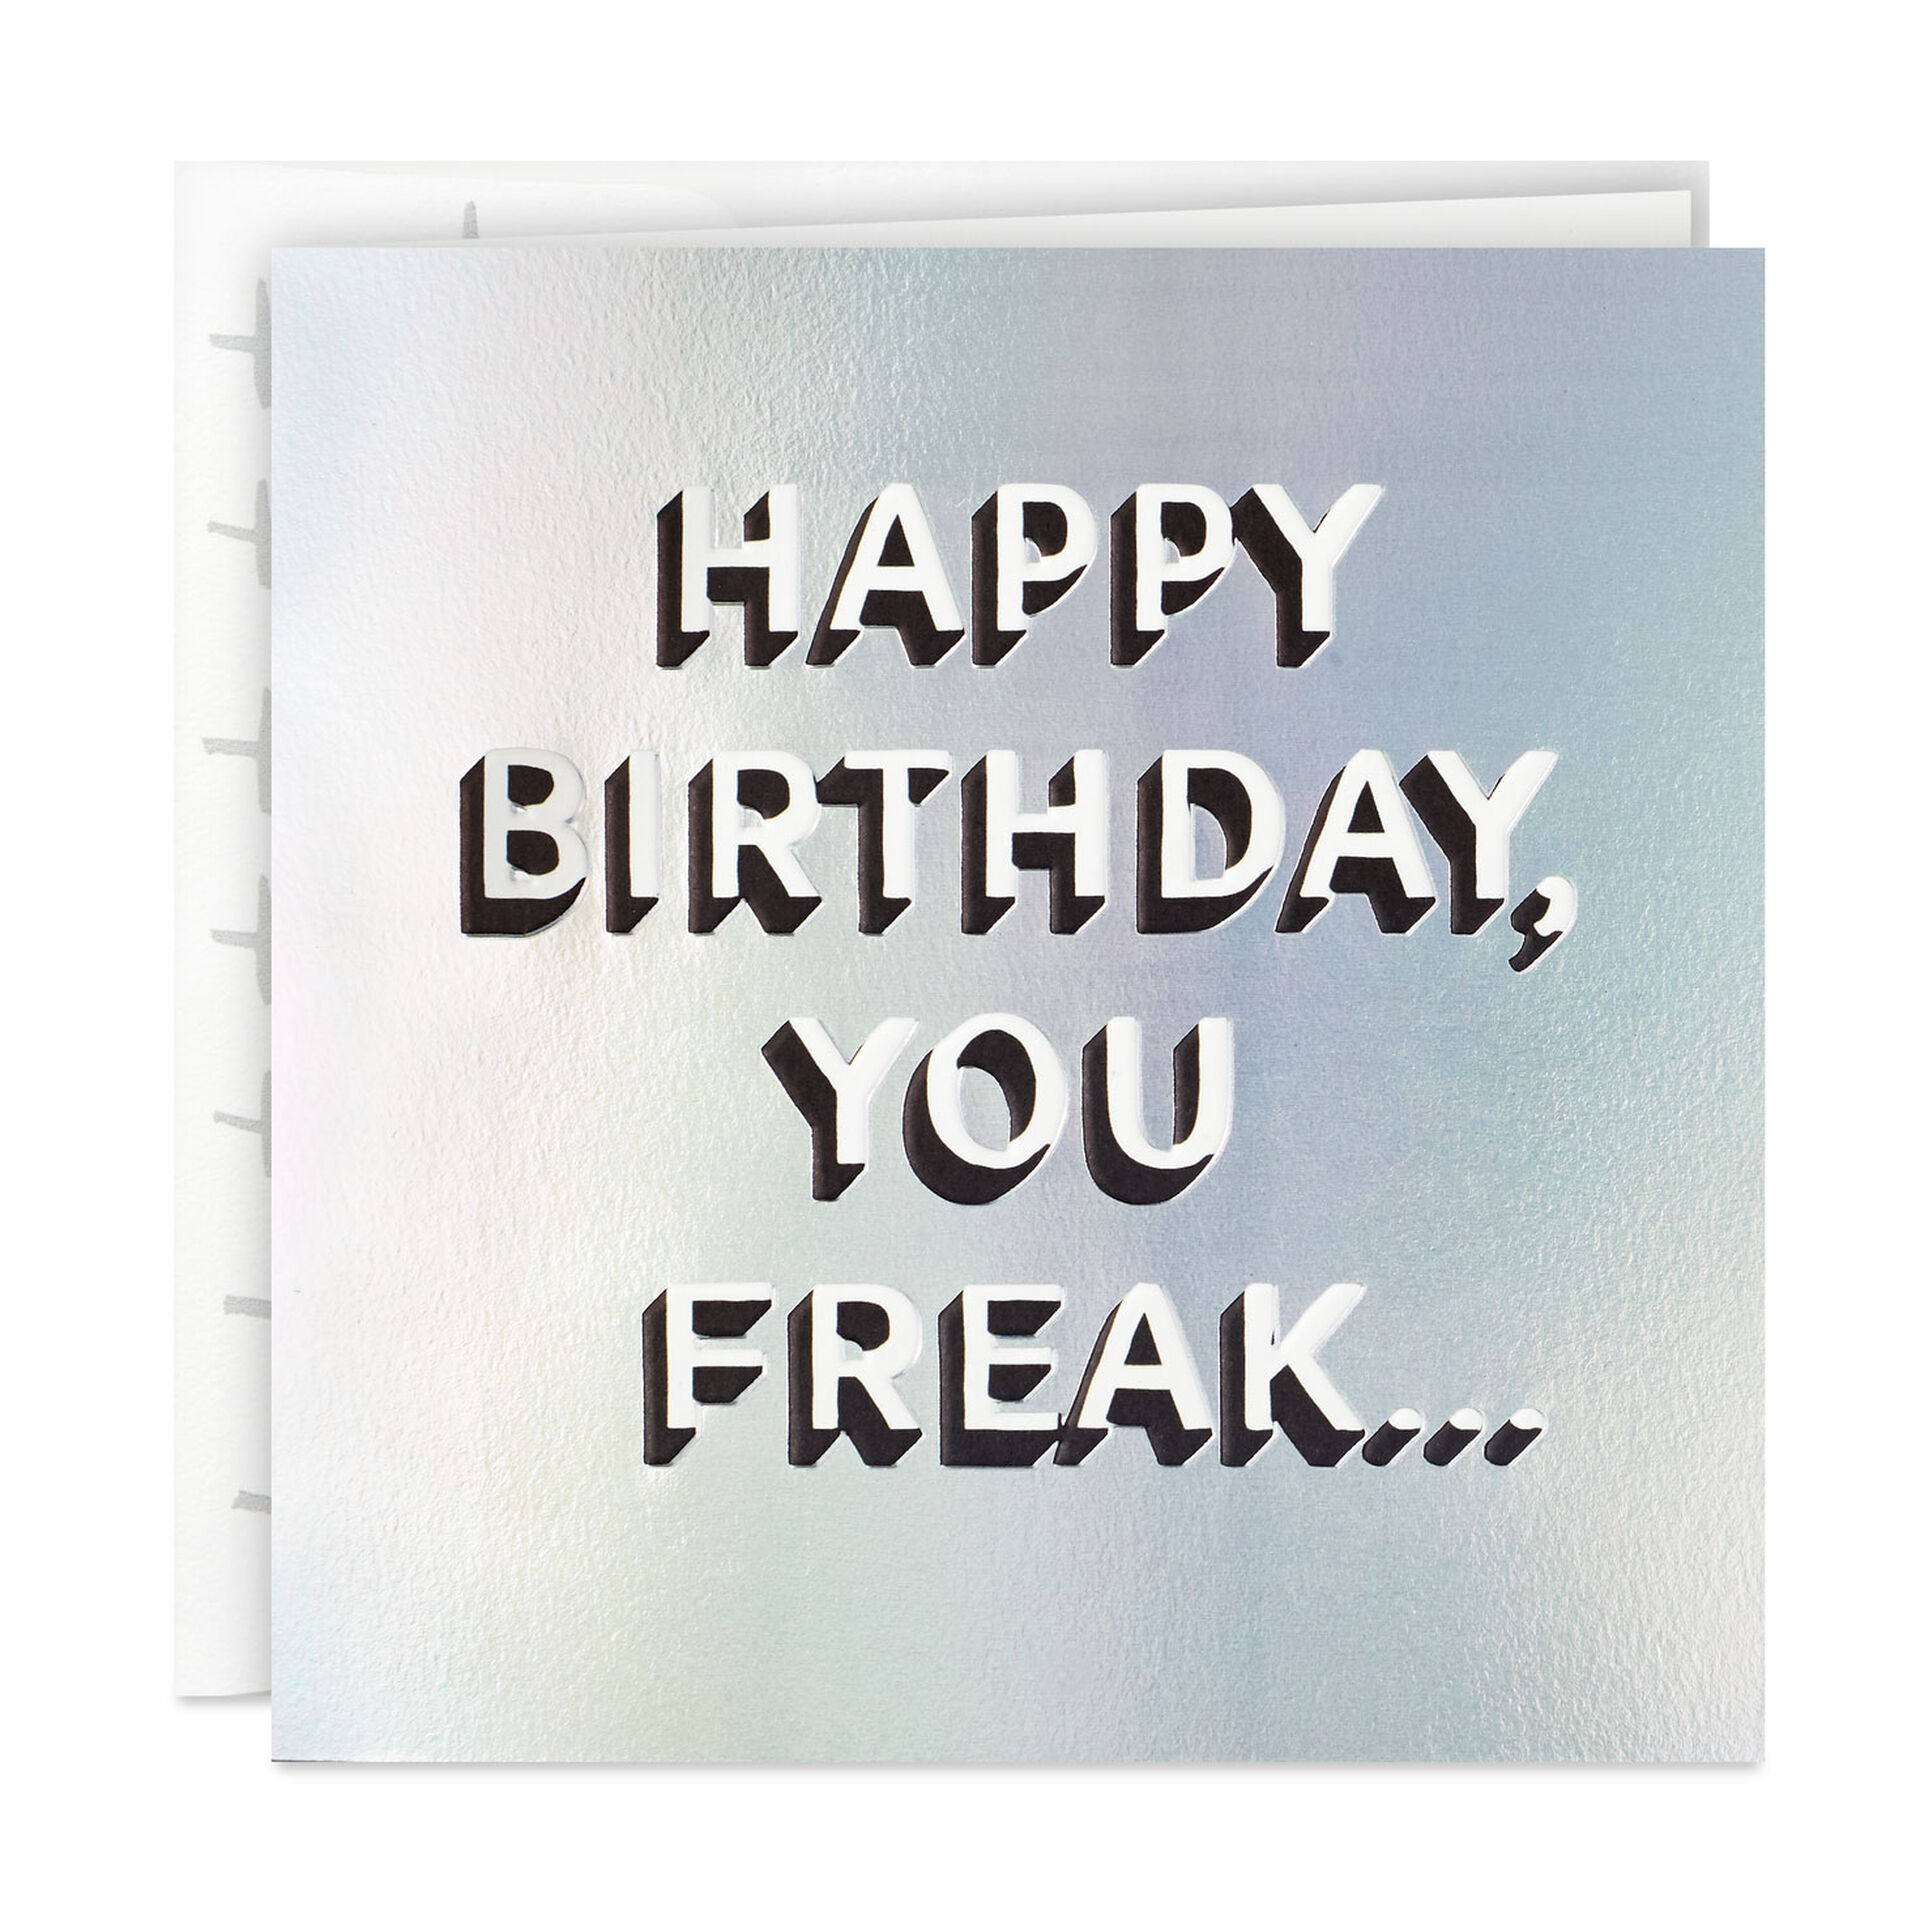 Freak-Lettering-on-Rainbow-Funny-Birthday-Card_399YYB2016_01